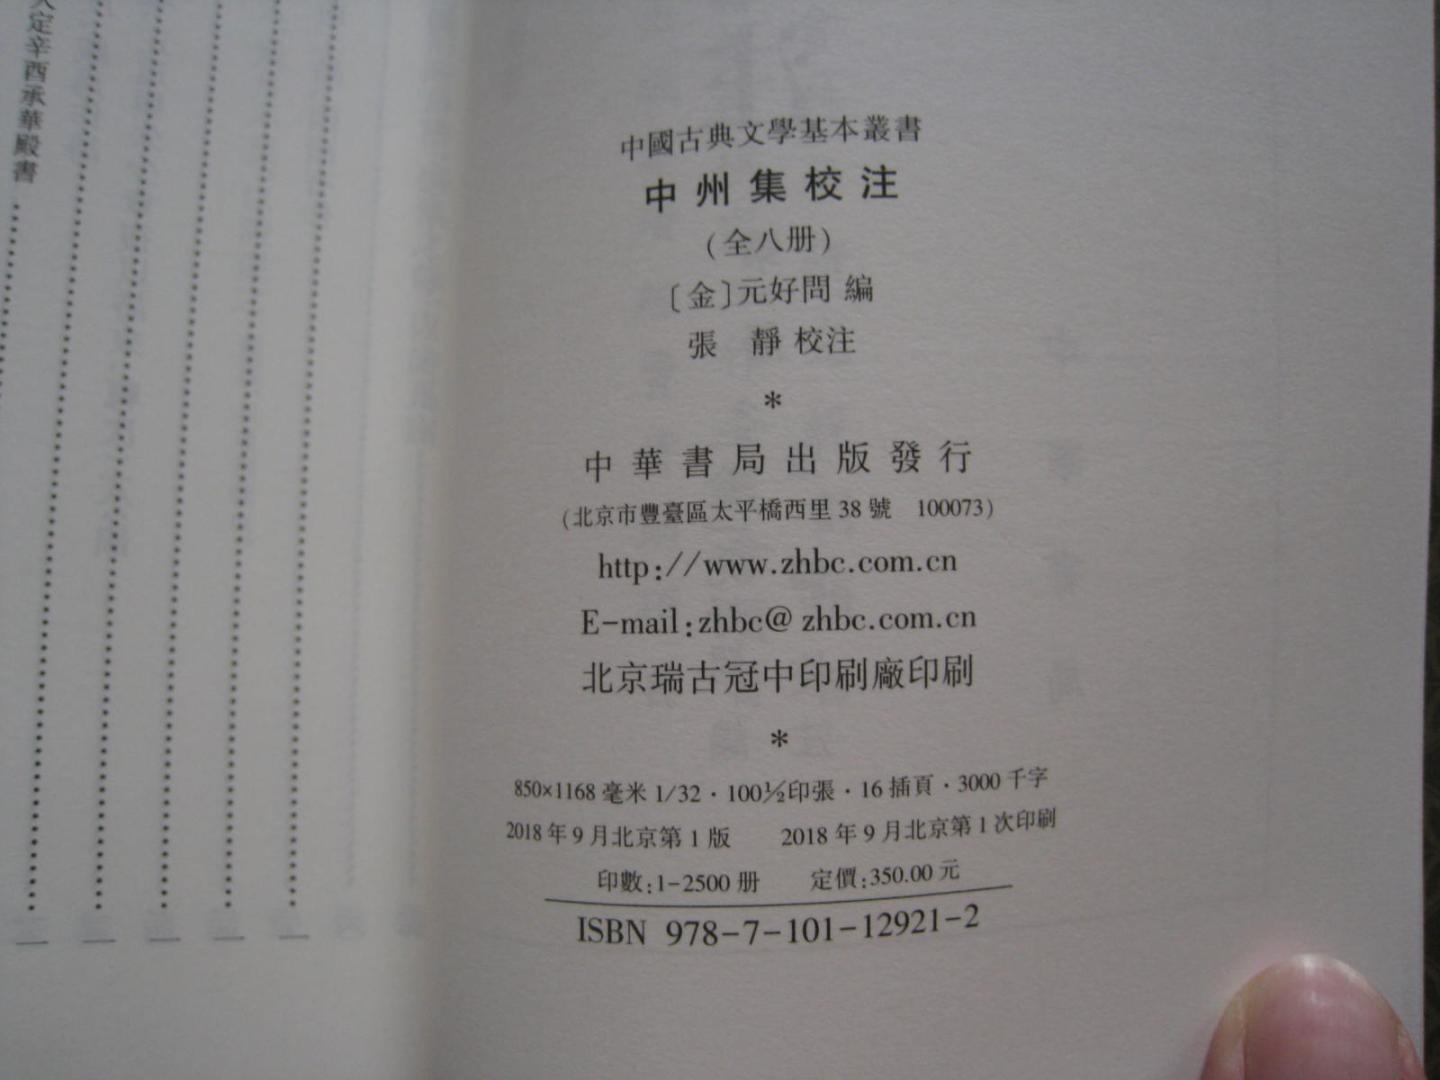 注解清晰，印刷精美，中华出的书就是品质保证